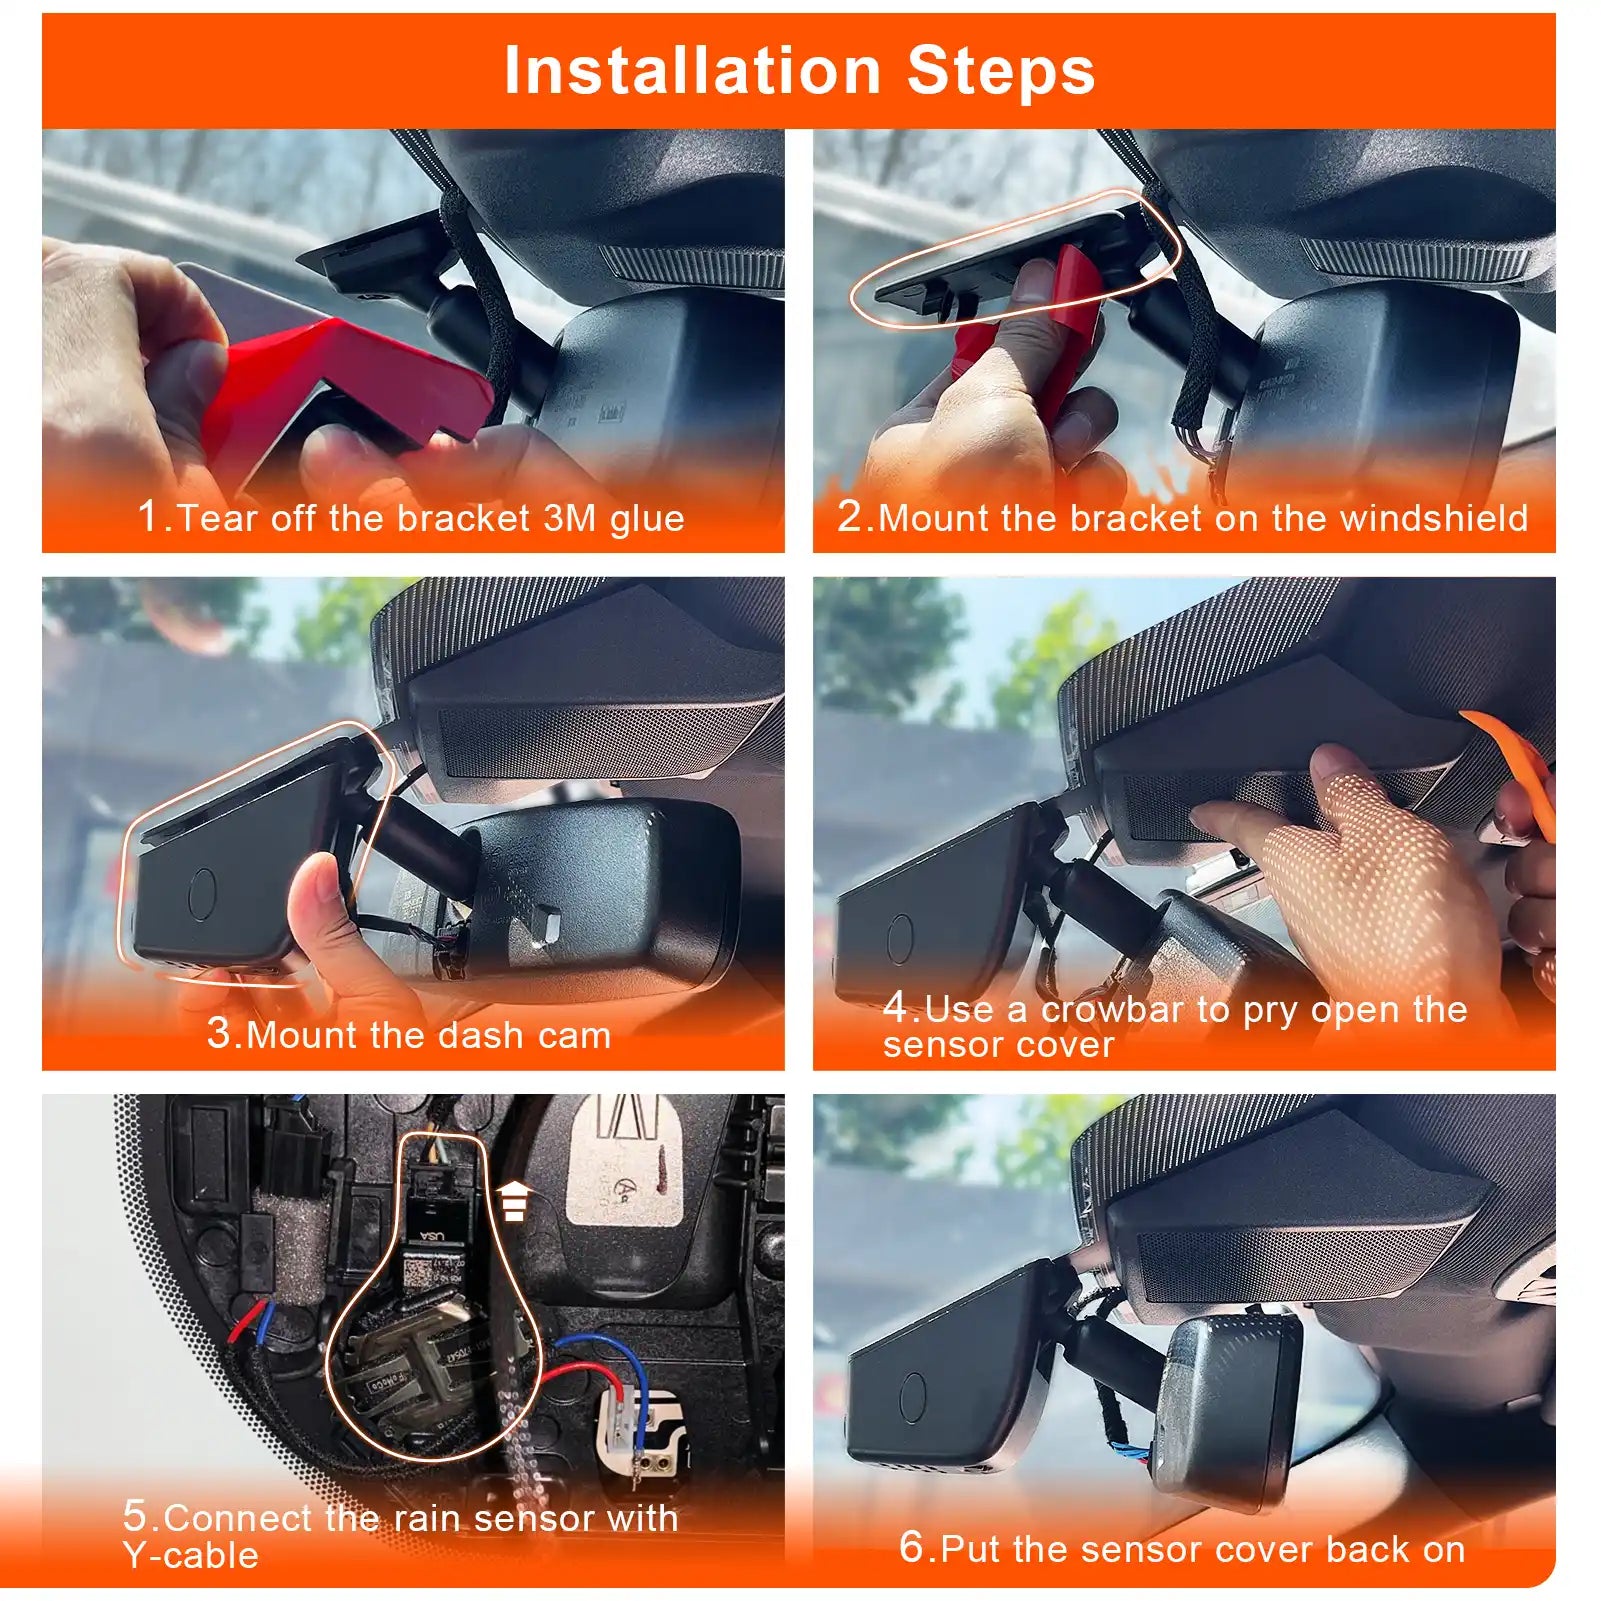 Ford Explorer dash cam installation steps 